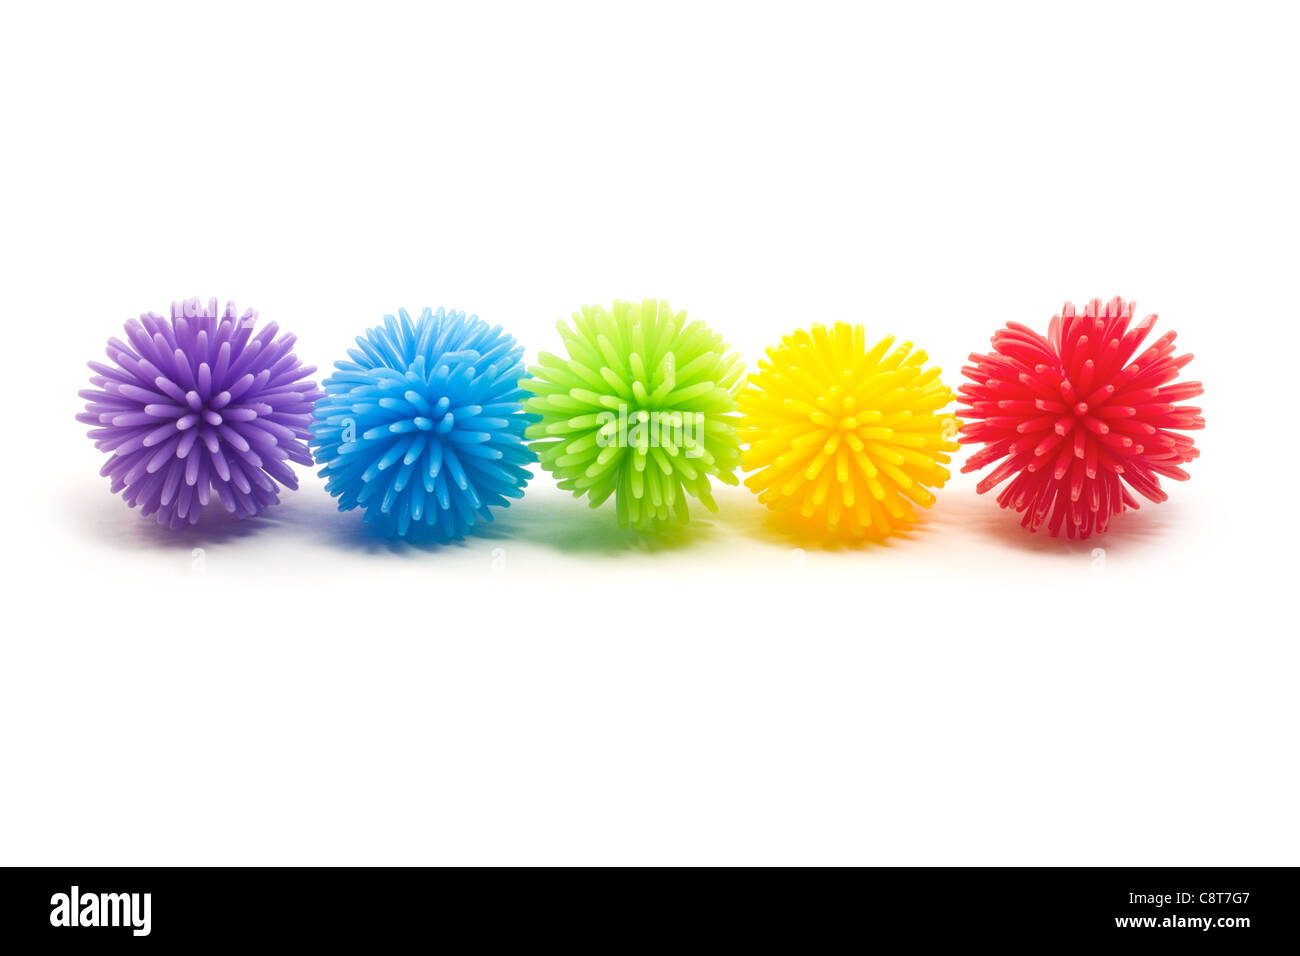 Fünf bunten Koosh Stress Kugeln in einer Linie. Farben sind violett, blau, grün, gelb und rot. Stockfoto